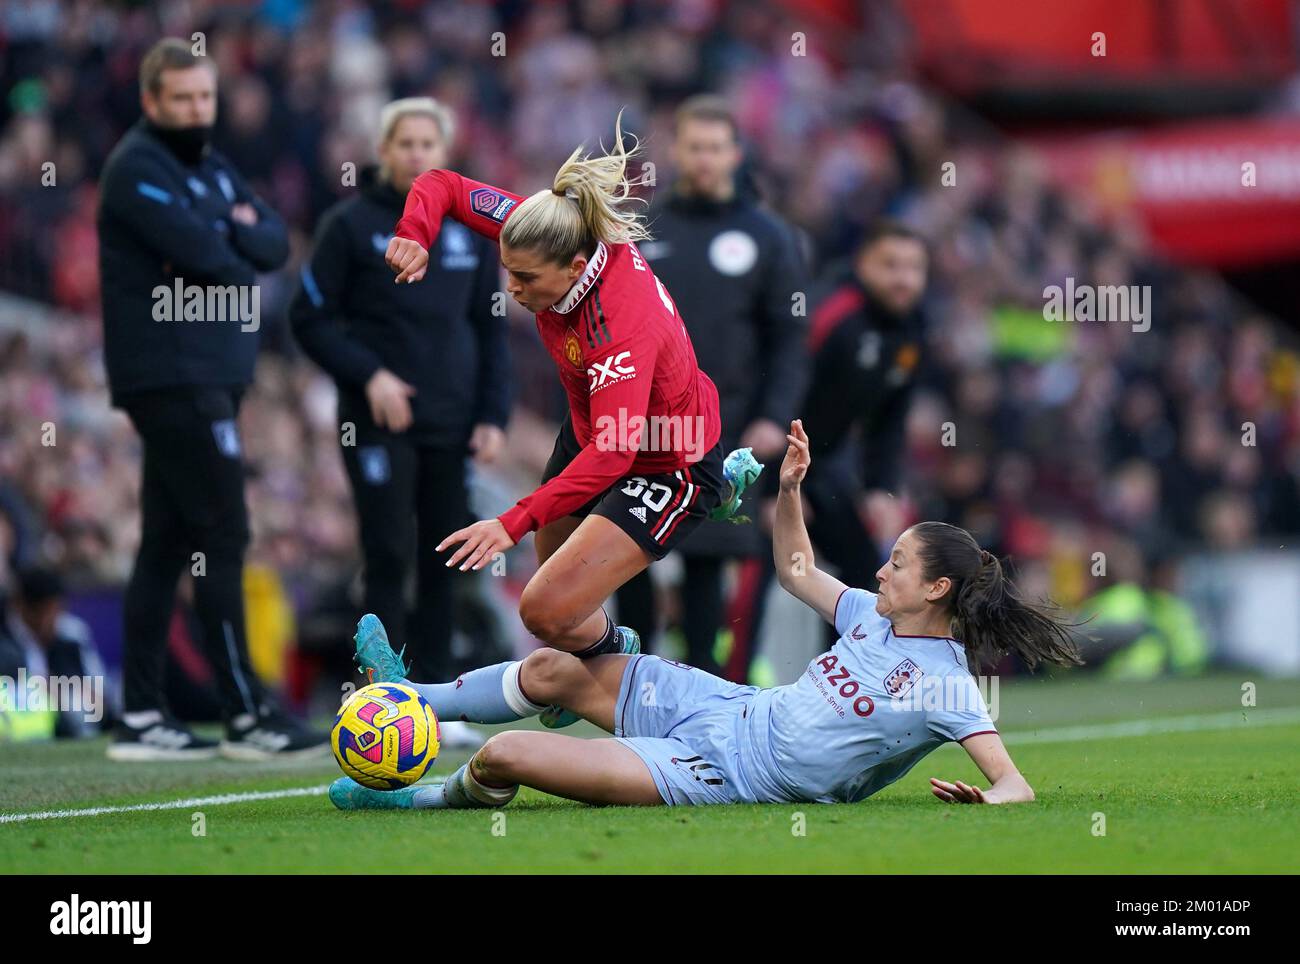 Alessia Russo (izquierda) del Manchester United es atacada por Danielle Turner de Aston Villa durante el partido de Superliga Femenina Barclays en Old Trafford, Manchester. Fecha de la foto: Sábado 3 de diciembre de 2022. Foto de stock